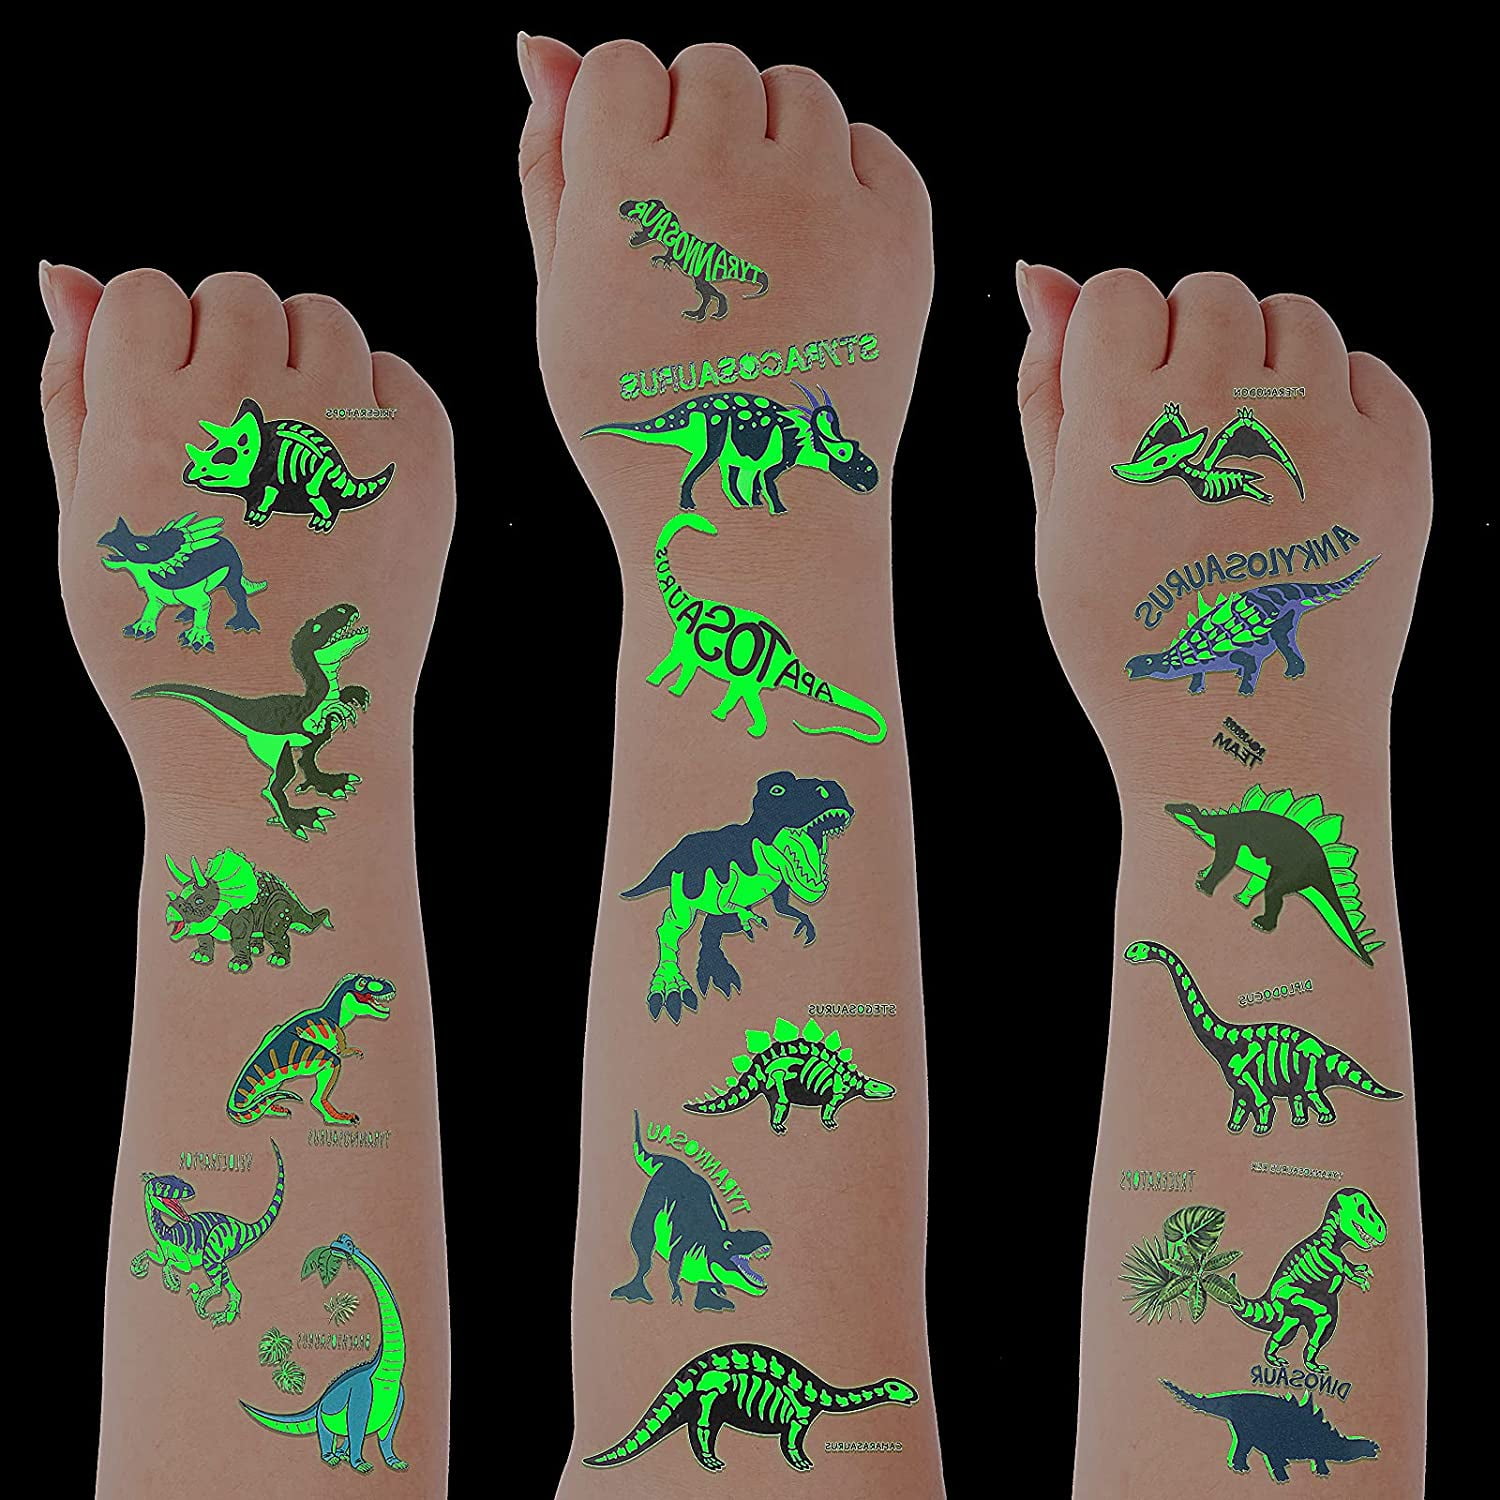 1 Cutest Dinosaur Kids Tattoos  Vegetable Ink  Tattly Loved by Kids  No  Nasties kids